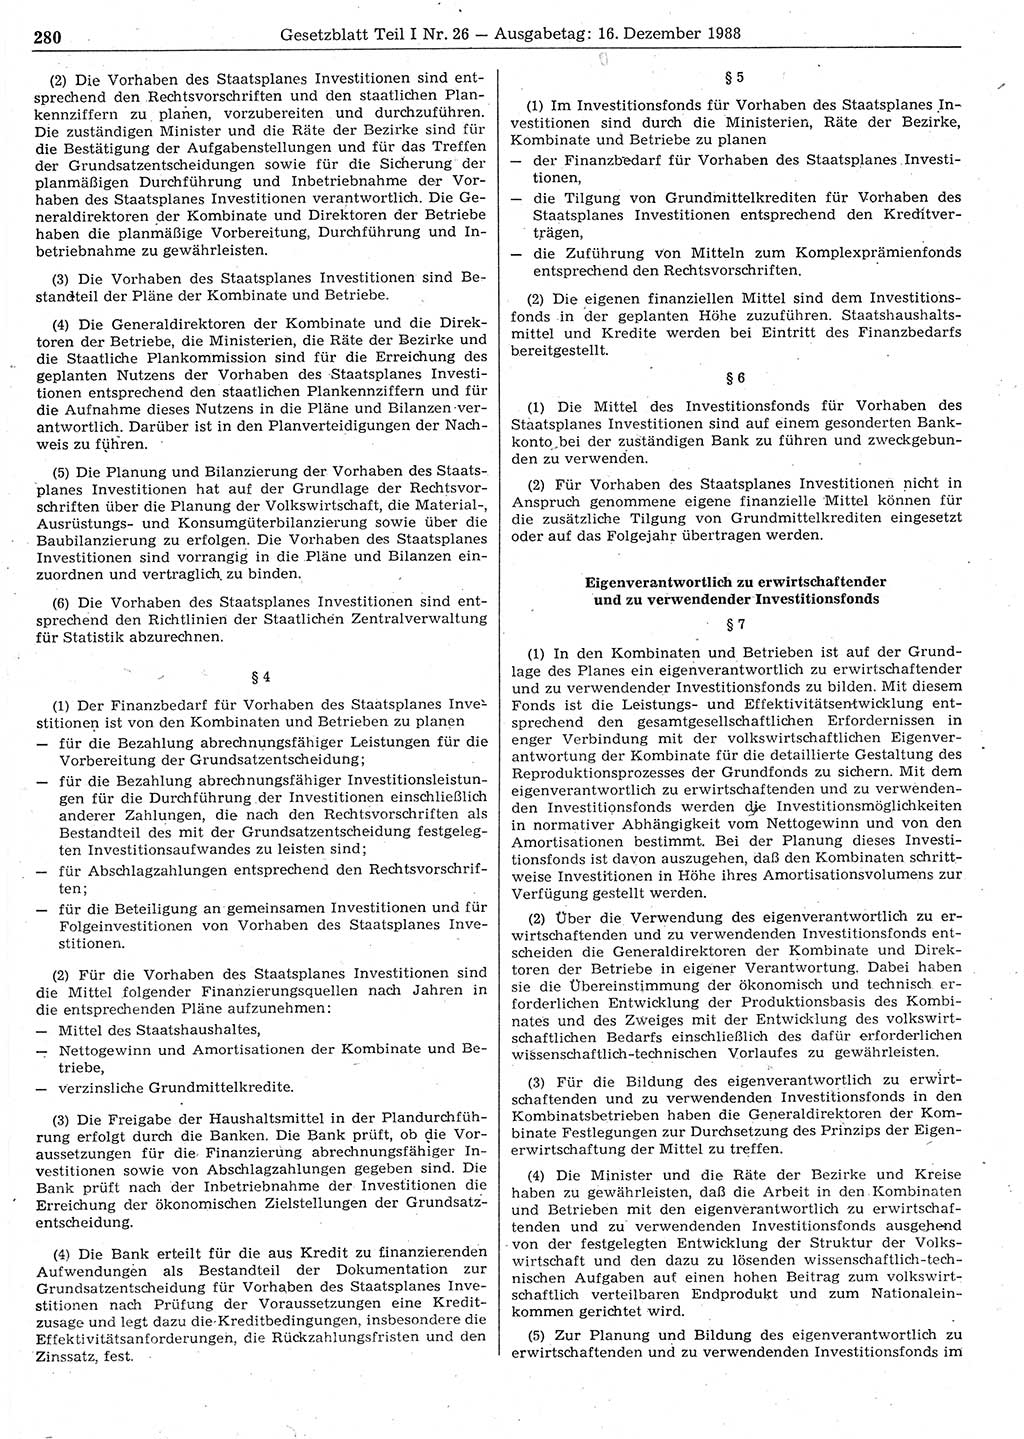 Gesetzblatt (GBl.) der Deutschen Demokratischen Republik (DDR) Teil Ⅰ 1988, Seite 280 (GBl. DDR Ⅰ 1988, S. 280)